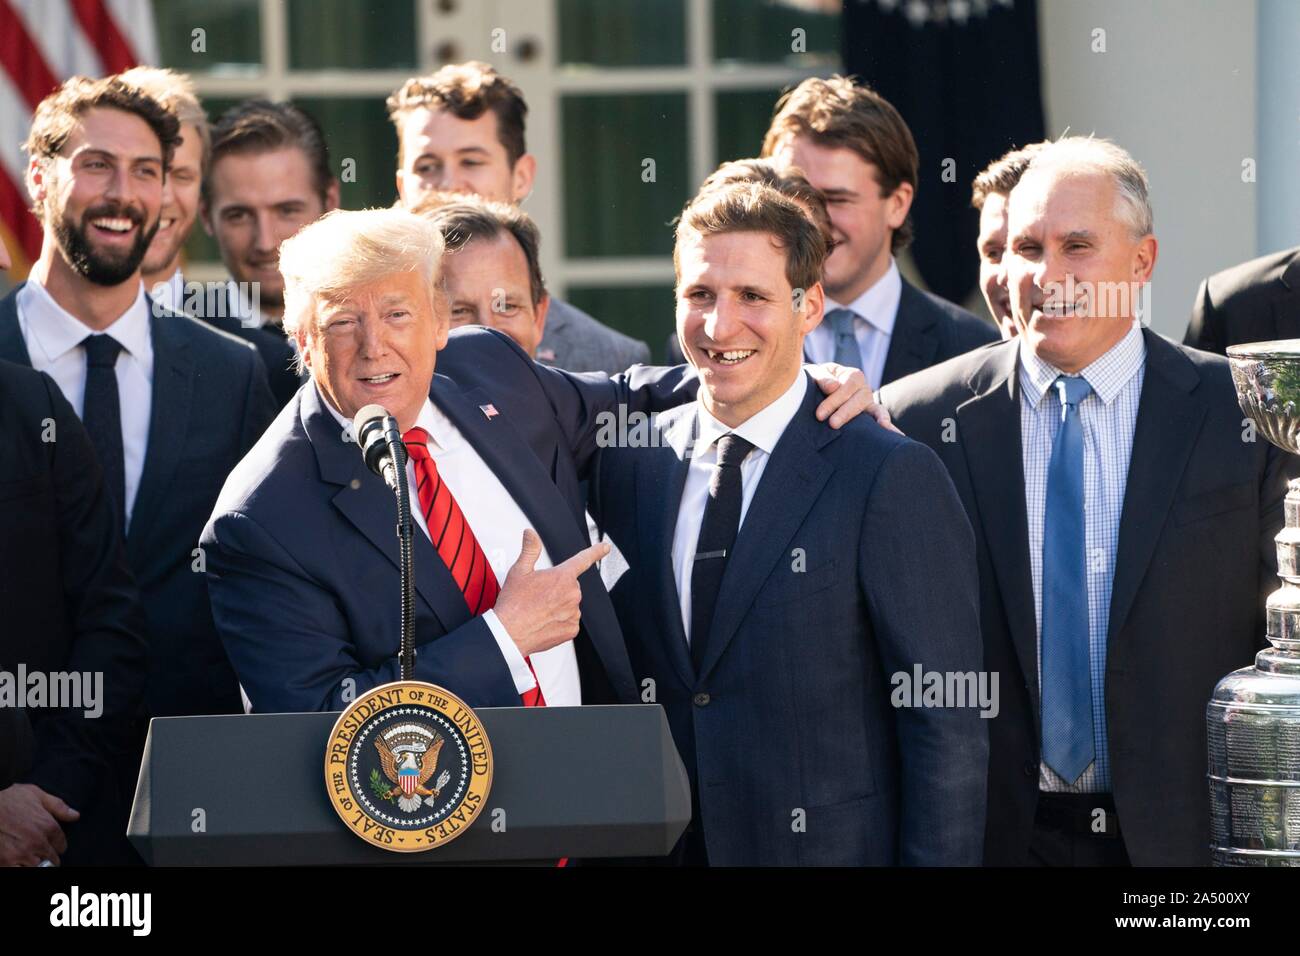 Président américain Donald Trump, gauche, englobe des Blues de Saint-Louis dvd Alex Steen, au cours d'une cérémonie d'accueil de la Coupe Stanley 2019 l'équipe professionnelle de hockey sur glace, les Blues de Saint-Louis, dans la roseraie de la Maison Blanche le 15 octobre 2019 à Washington, DC. Banque D'Images